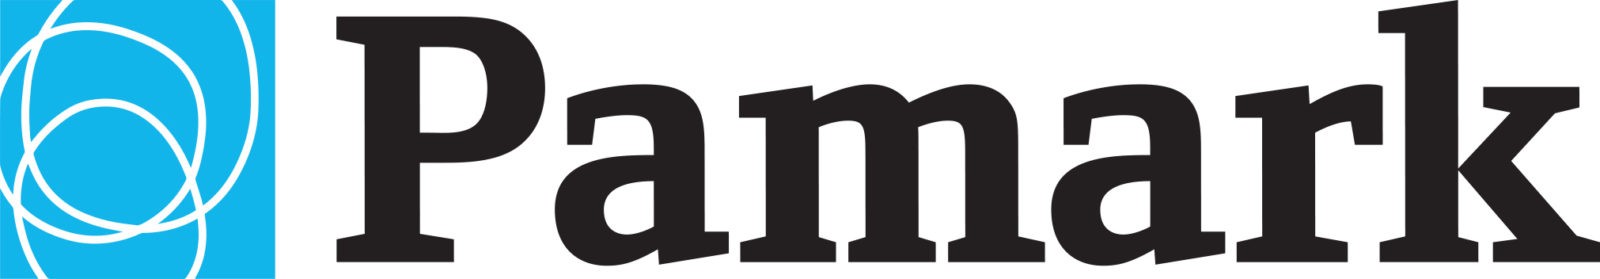 Pamark_2015_Logo_BlueBlack